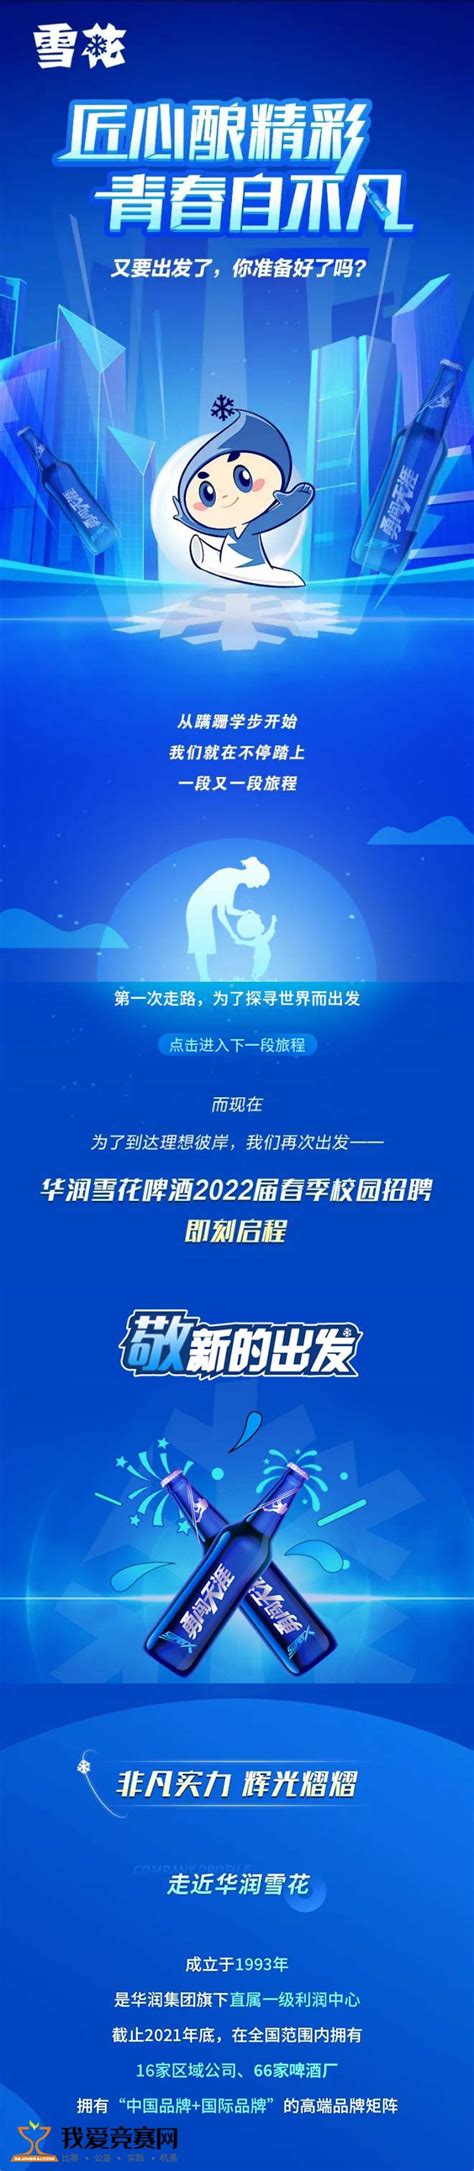 青岛啤酒海报PSD素材免费下载_红动中国